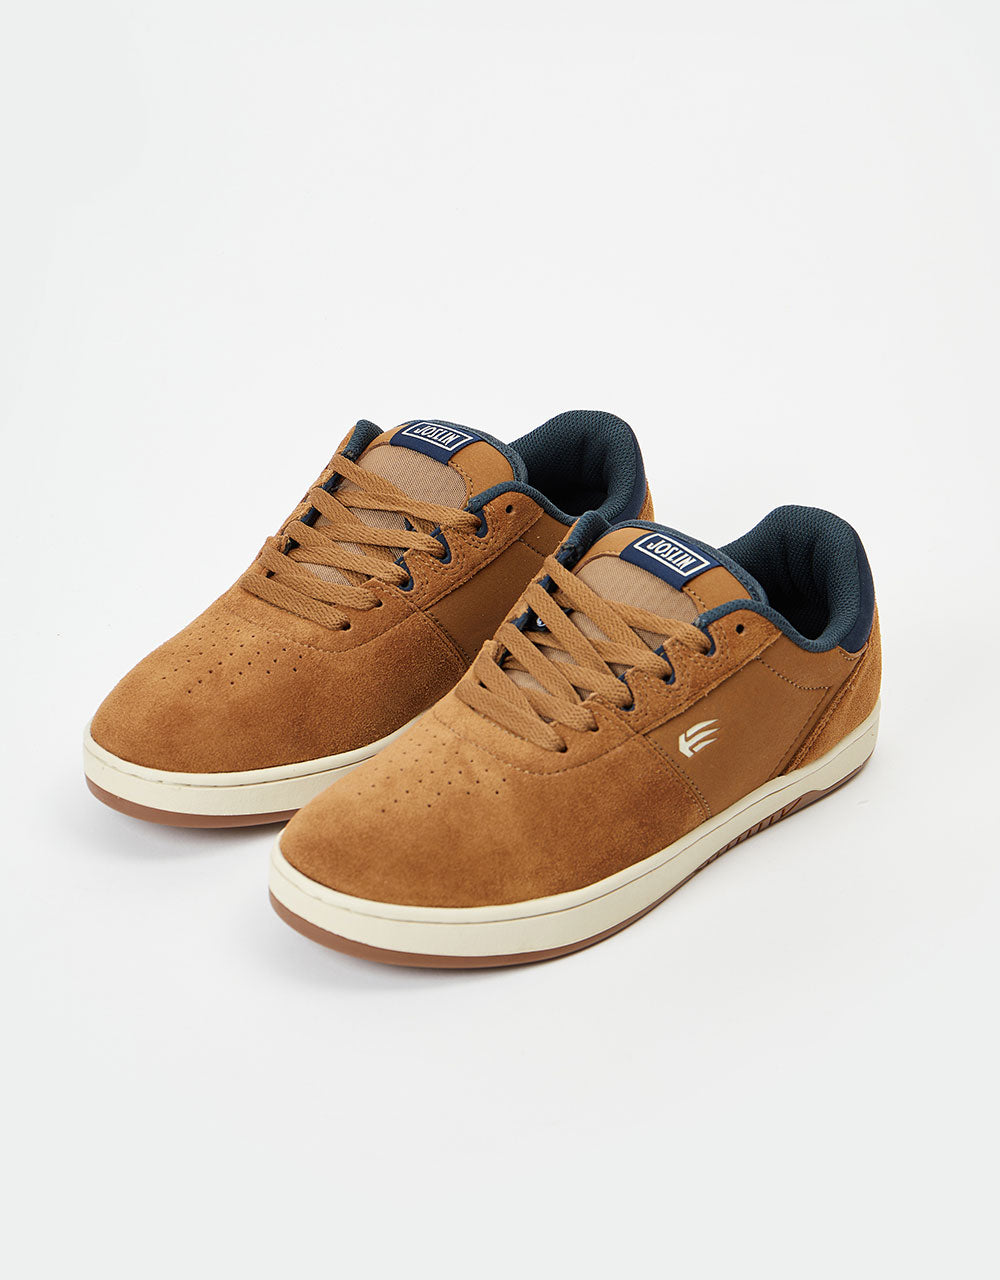 Etnies x Michelin Josl1n Skate Shoes - Brown/Navy